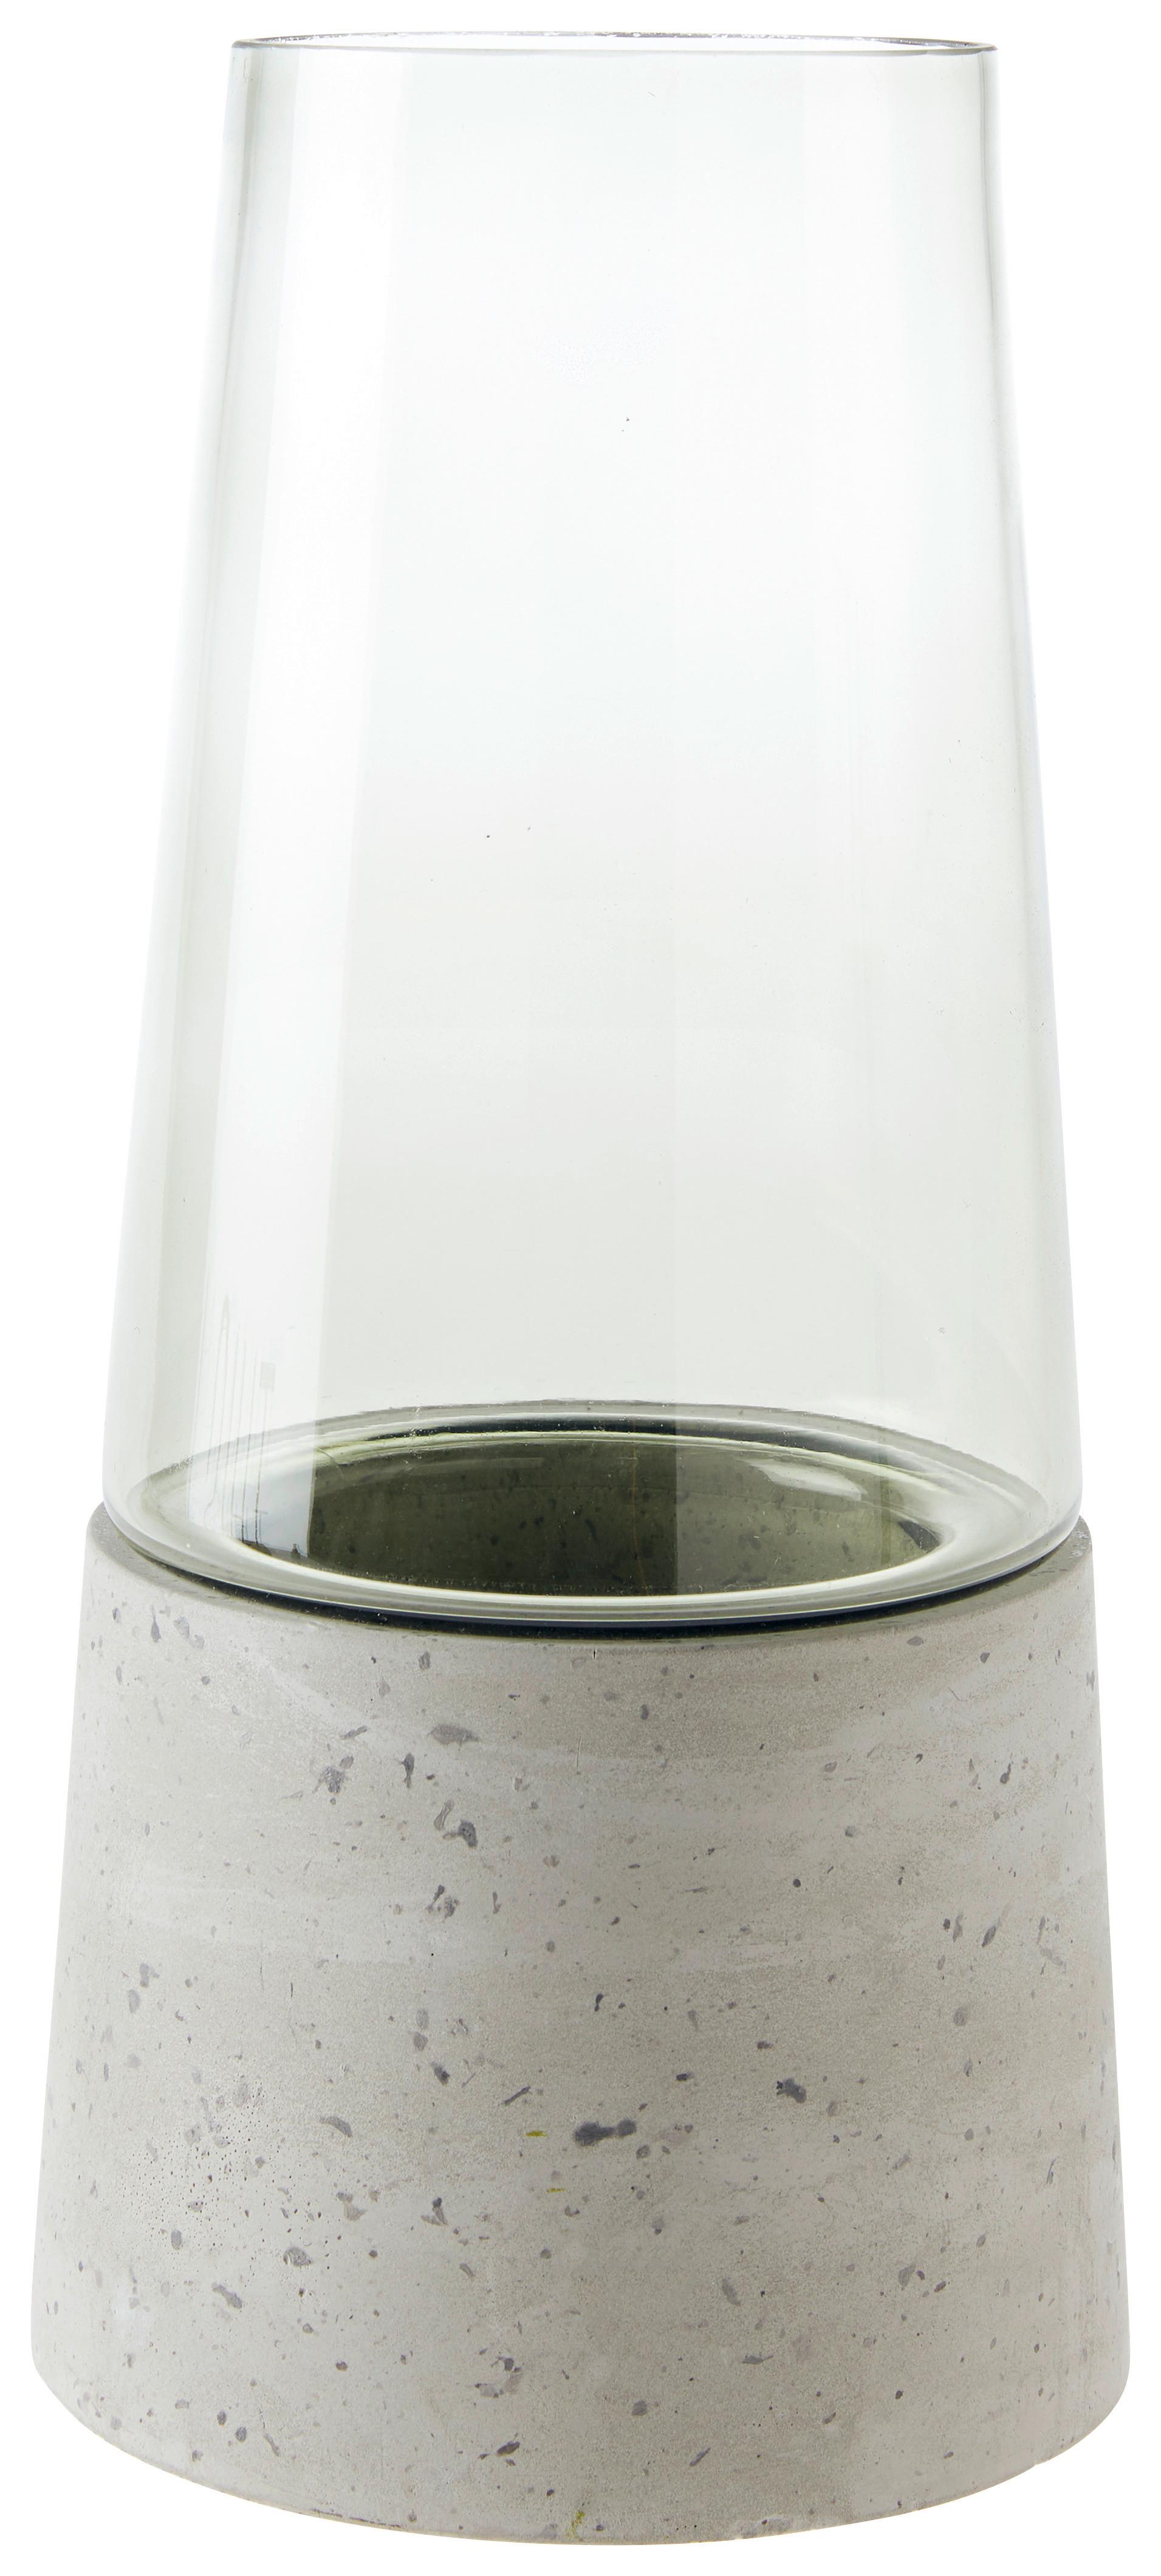 Vaza Eda -Paz- - prozorno/svetlo siva, Moderno, kamen/steklo (14,3/30cm) - Modern Living